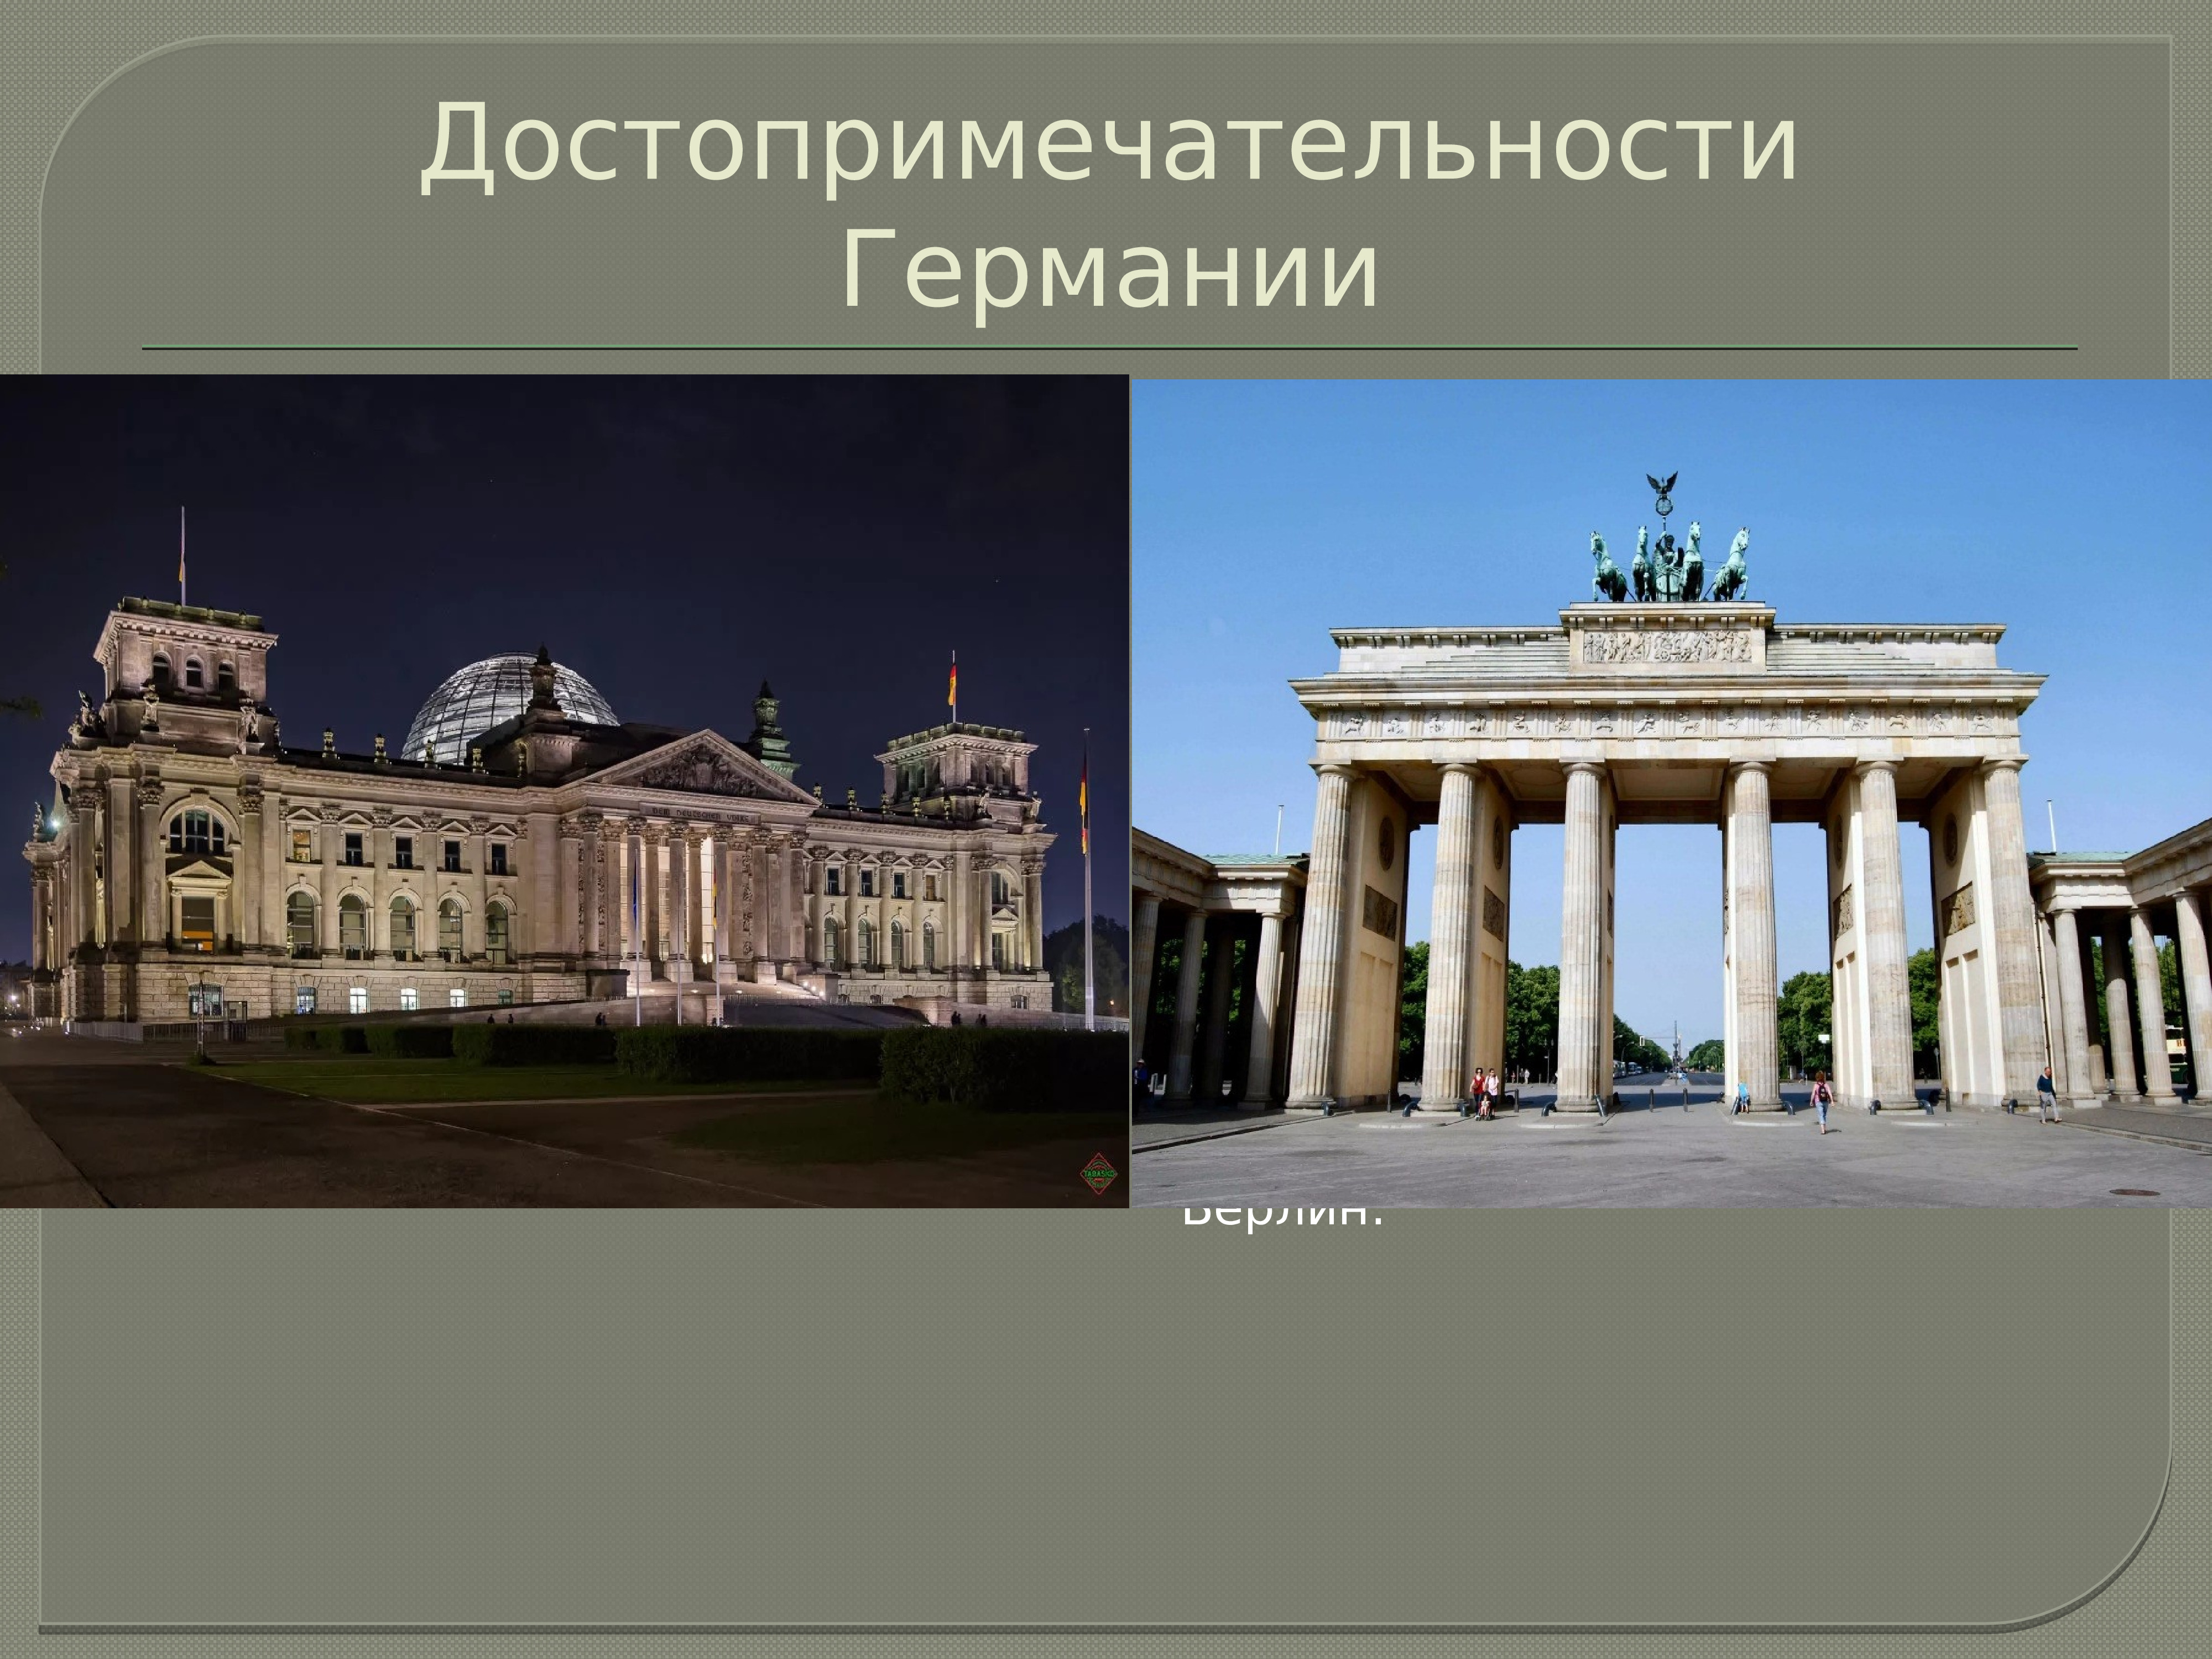 достопримечательности германии фото с названиями на русском языке